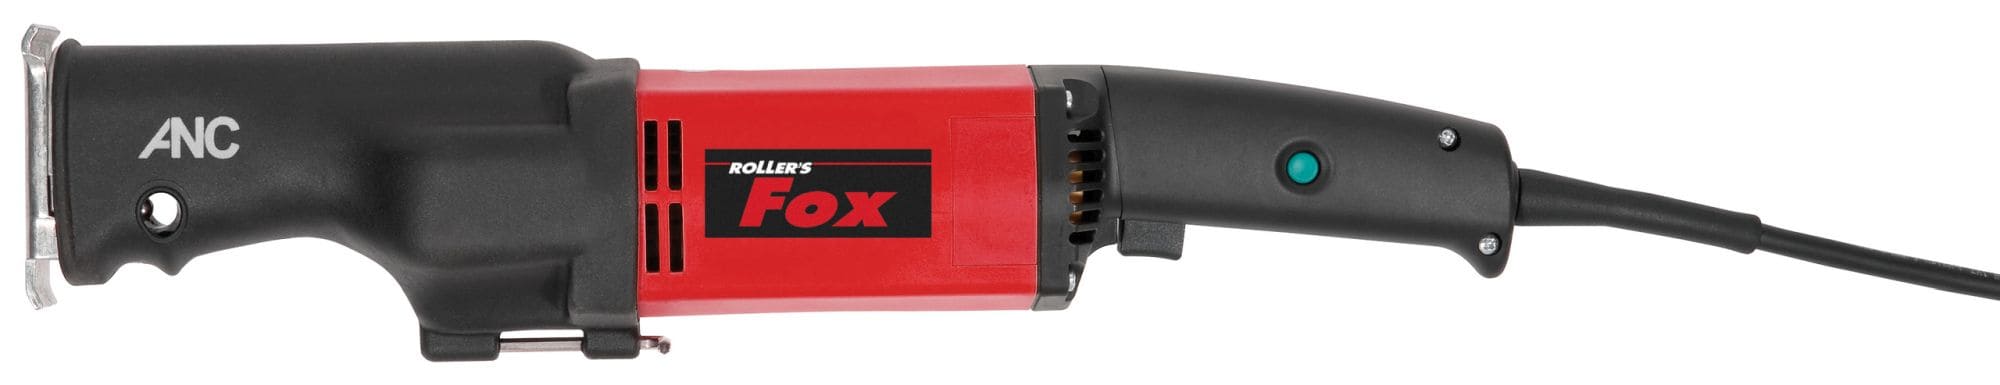 ROLLER'S Fox Antriebsmaschine - Elektro-Rohrsäge für Rohre bis Ø 6 Zoll, 160 mm